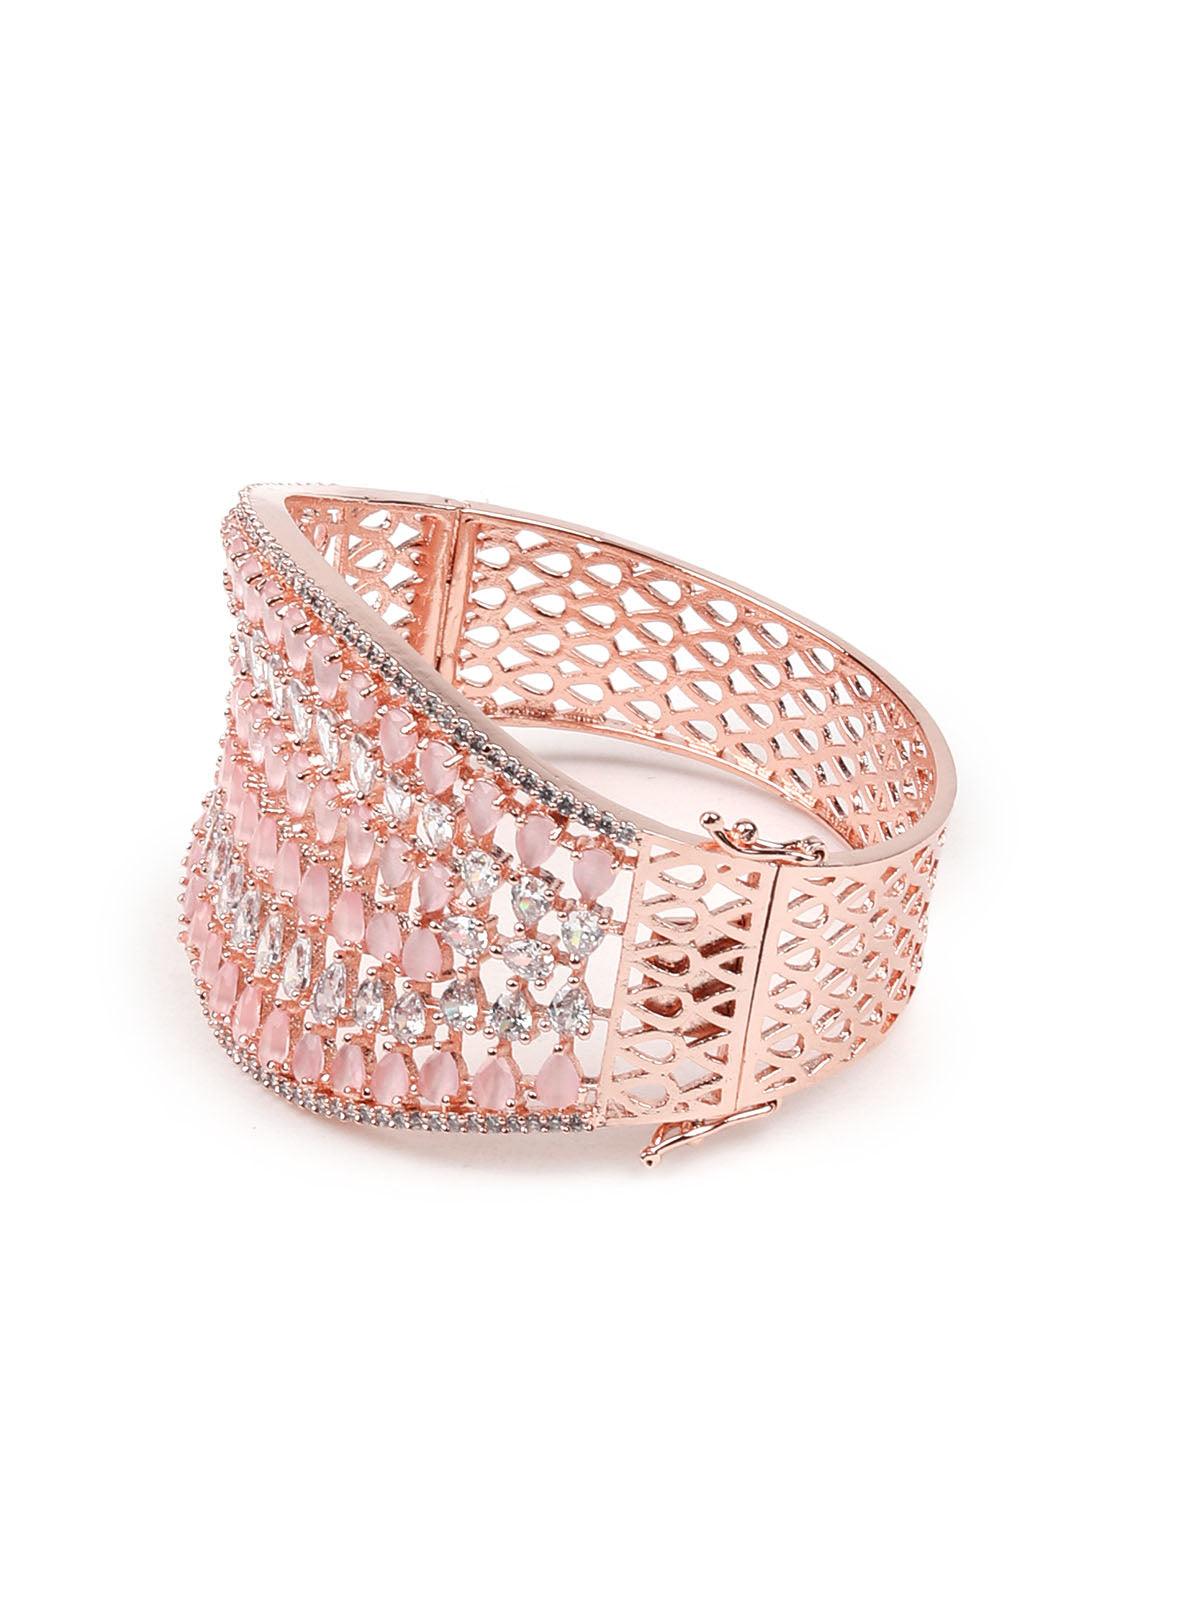 Stunning rose gold broad embellished bracelet - Odette